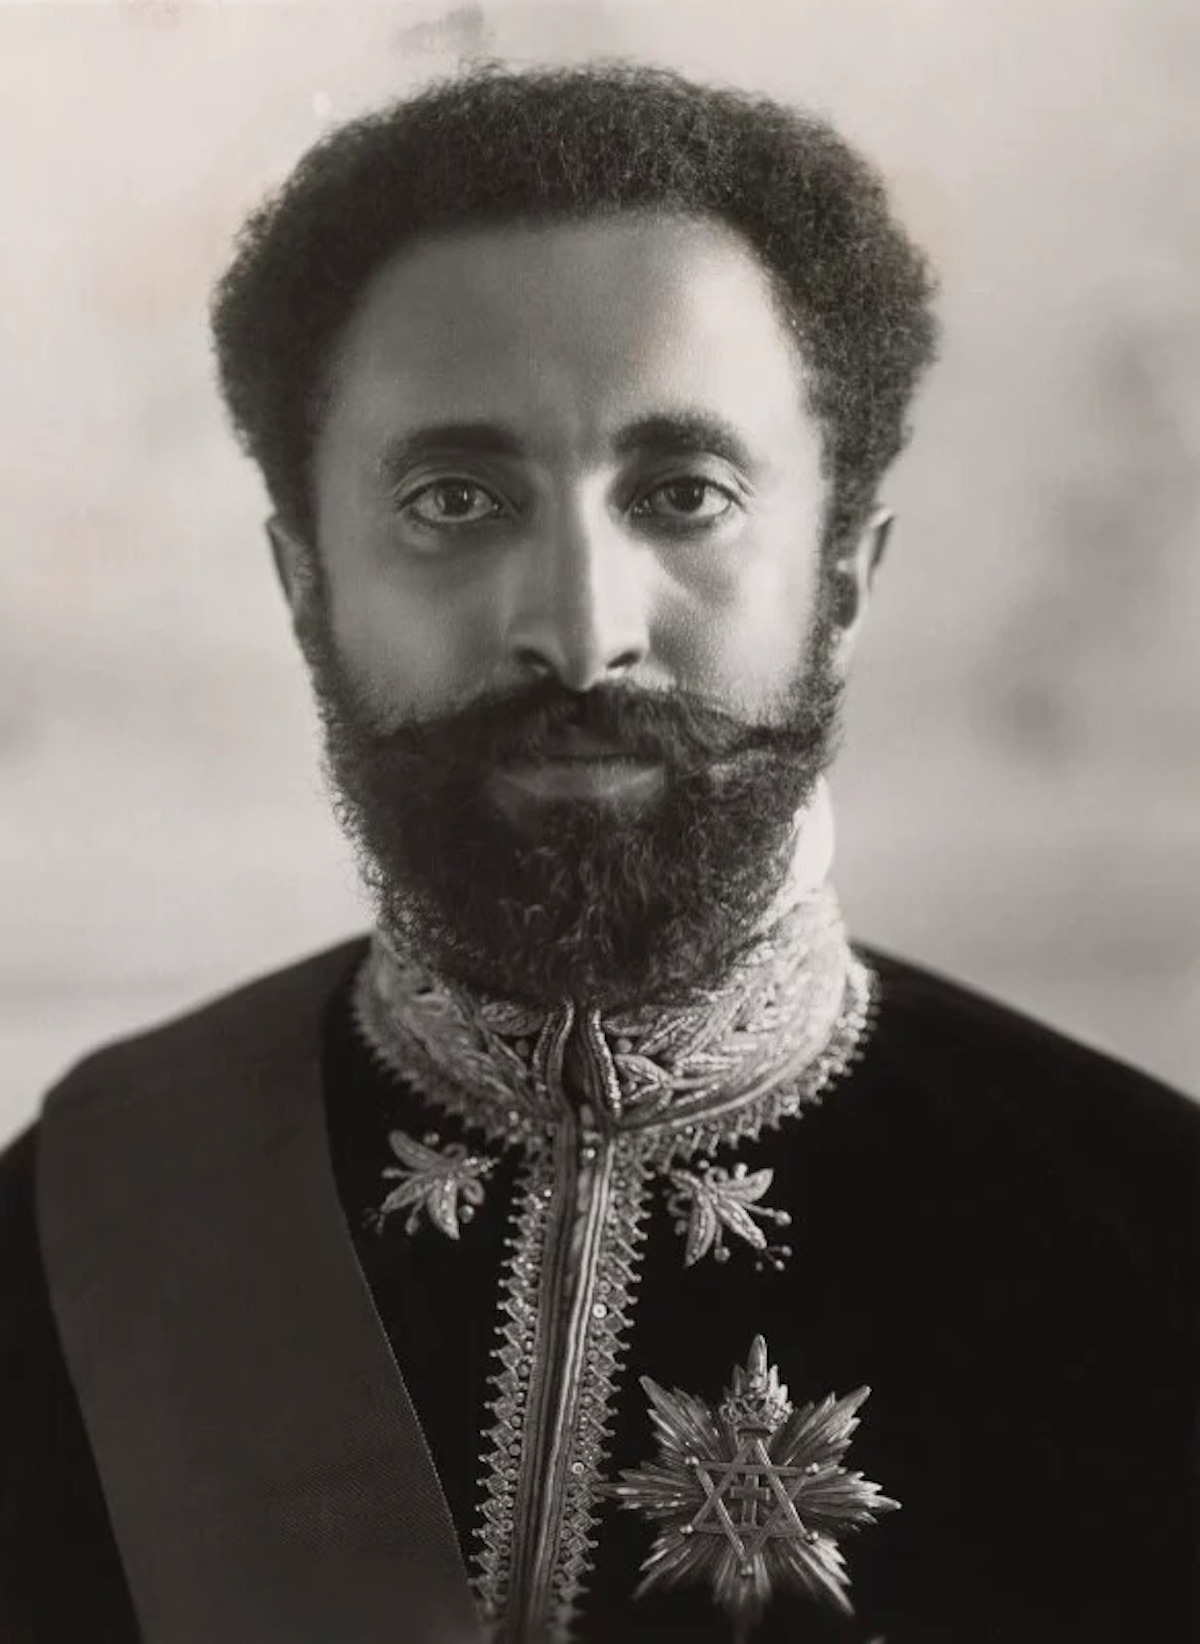 Hailé Selassié